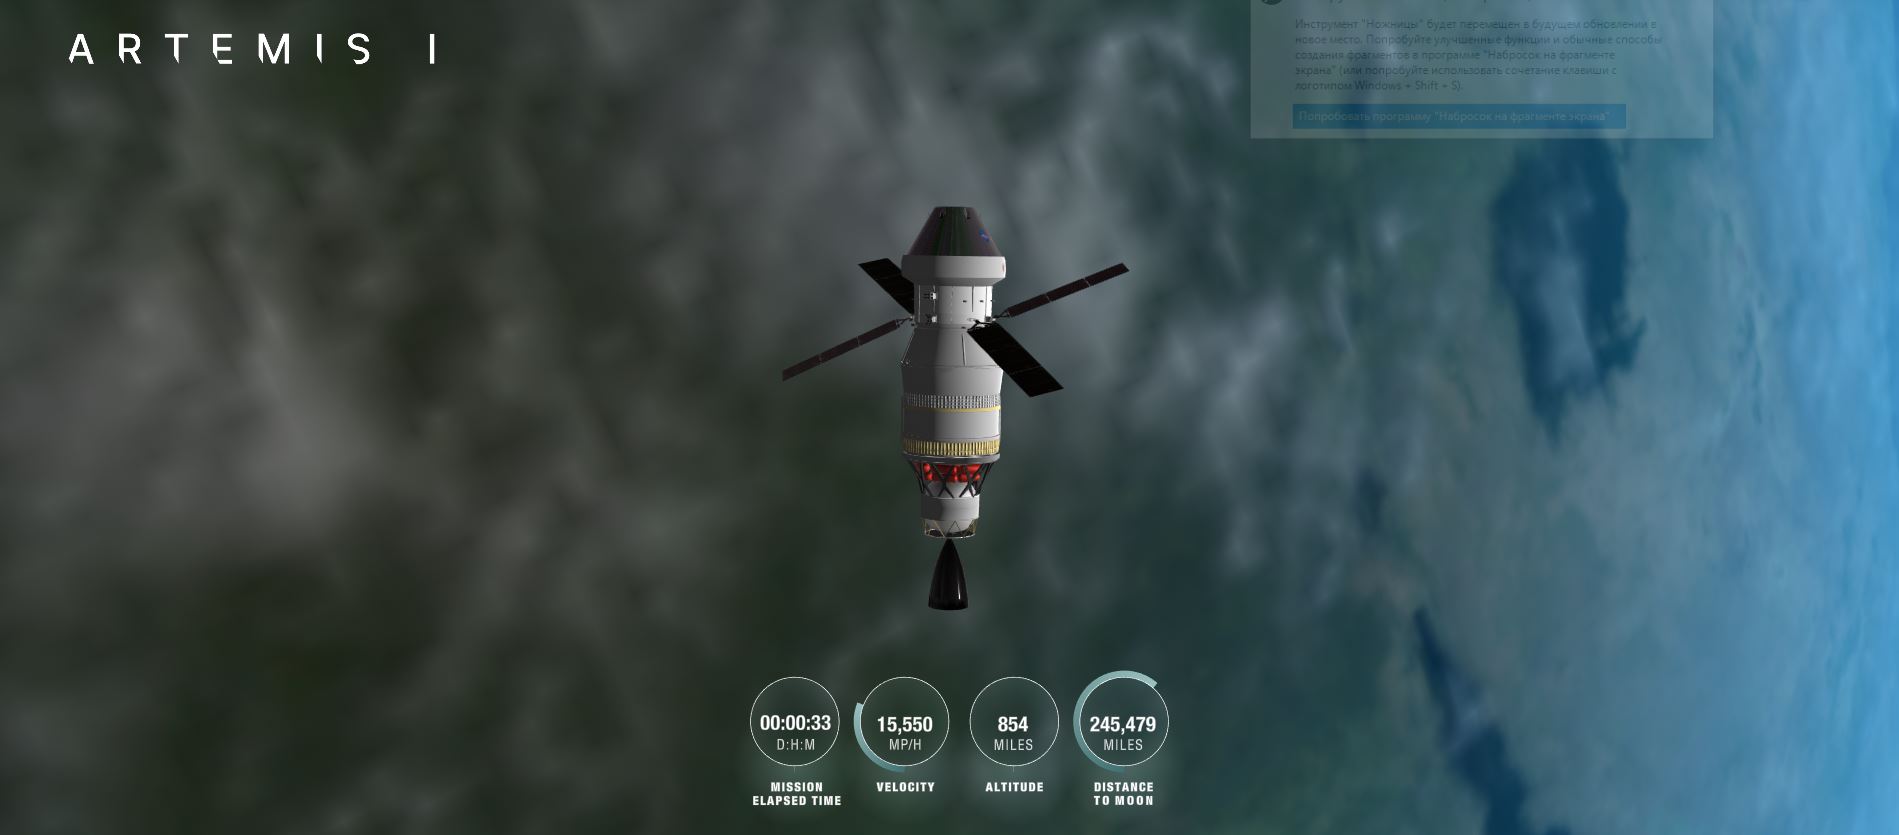 Наконец состоялся старт ракеты SLS миссии Artemis I